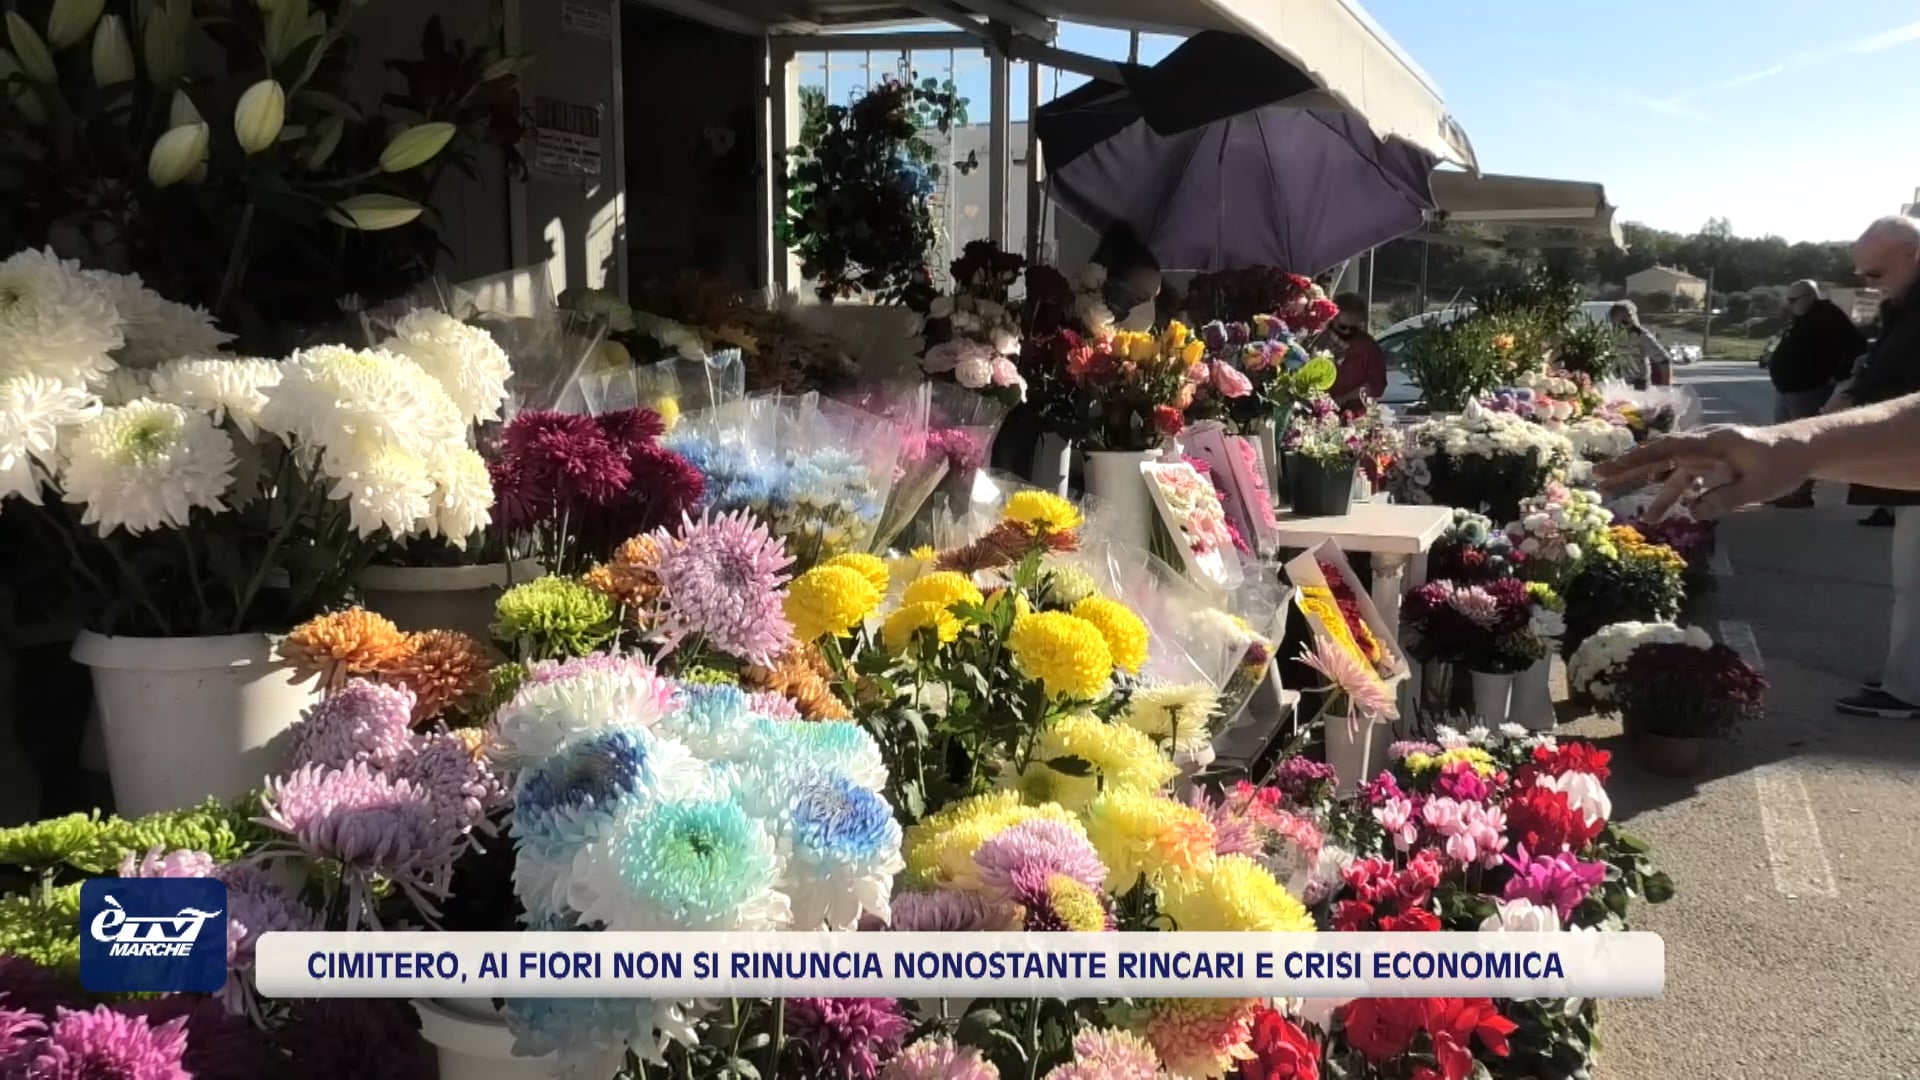 Ognissanti, ai fiori non si rinuncia nonostante i rincari e la crisi economica - VIDEO 